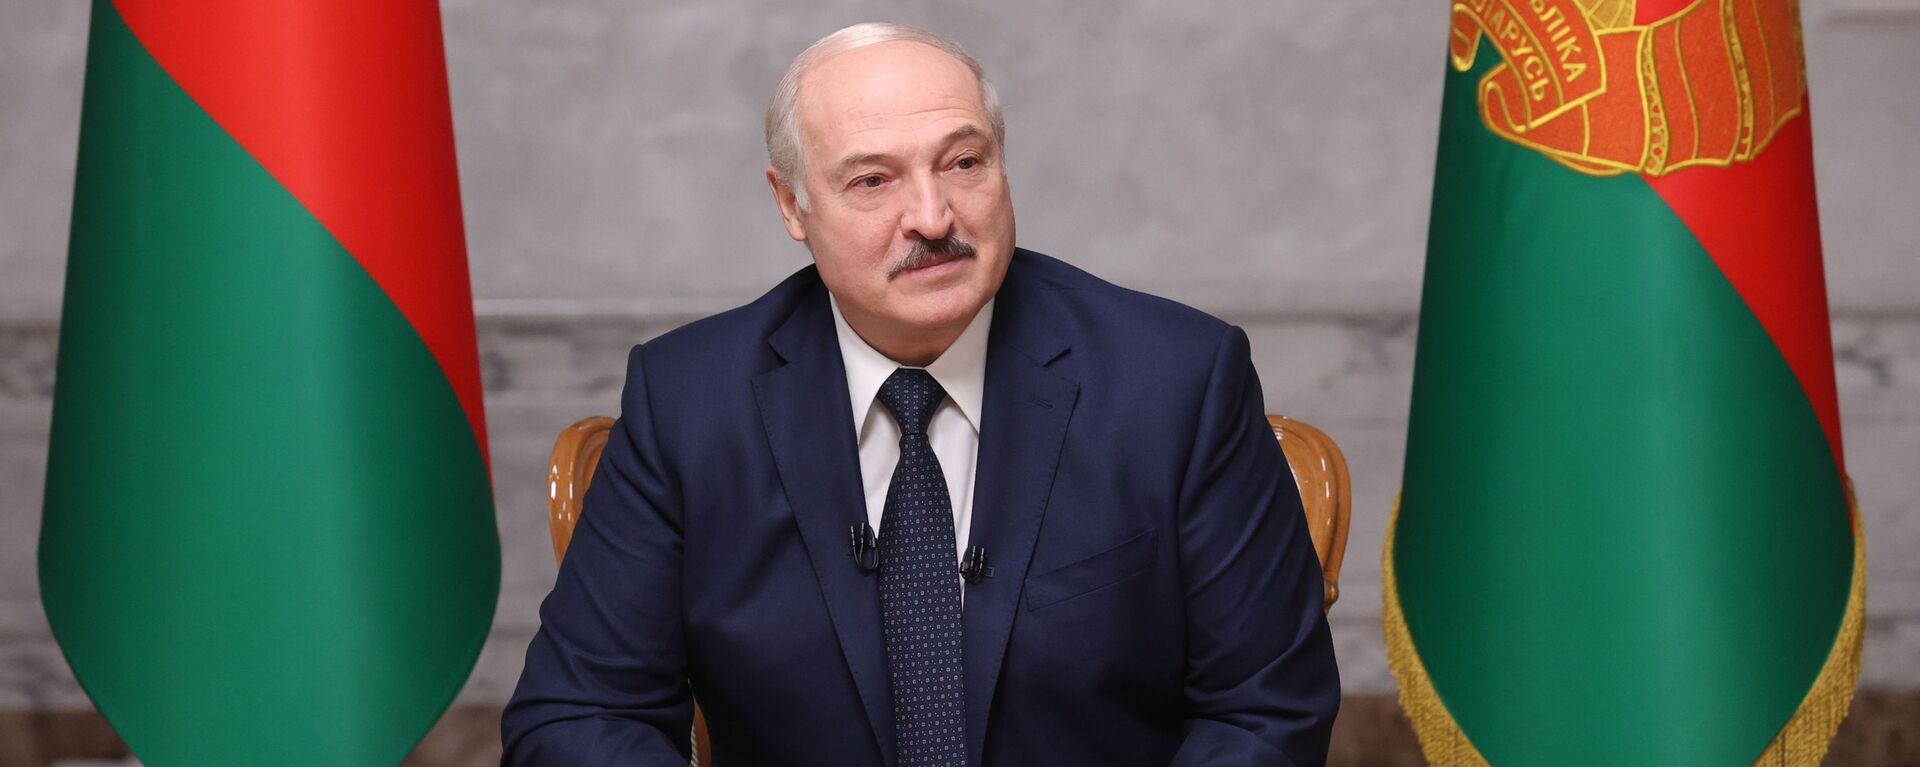 Президент Белоруссии А. Лукашенко дал интервью российским журналистам - Sputnik Армения, 1920, 18.12.2020